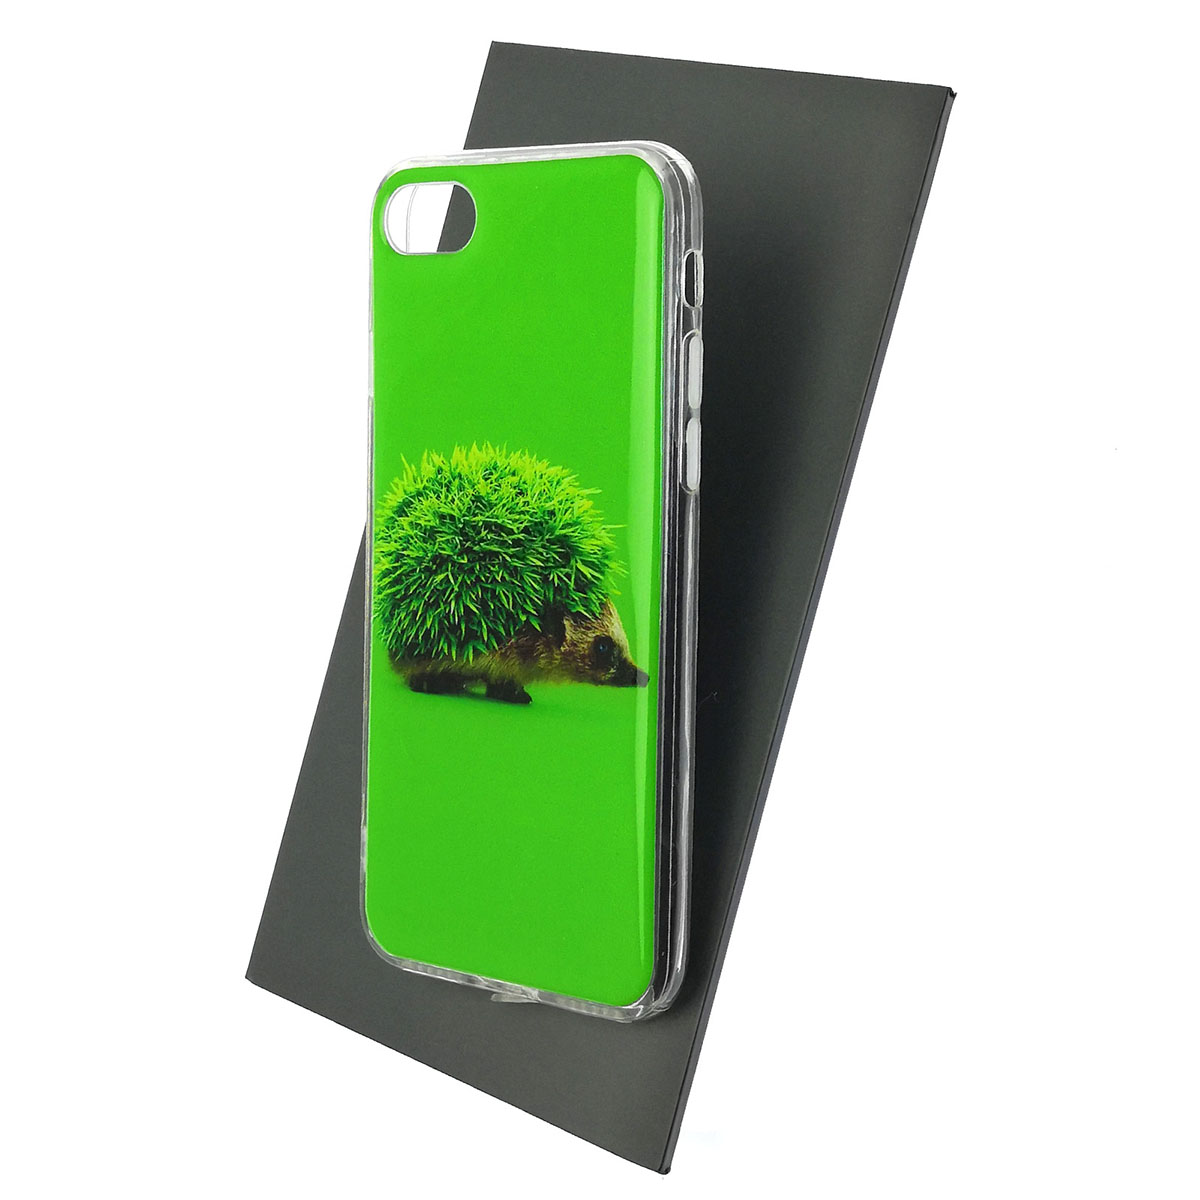 Чехол накладка для APPLE iPhone 7, iPhone 8, iPhone SE 2020, силикон, глянцевый, рисунок Зеленый ежик